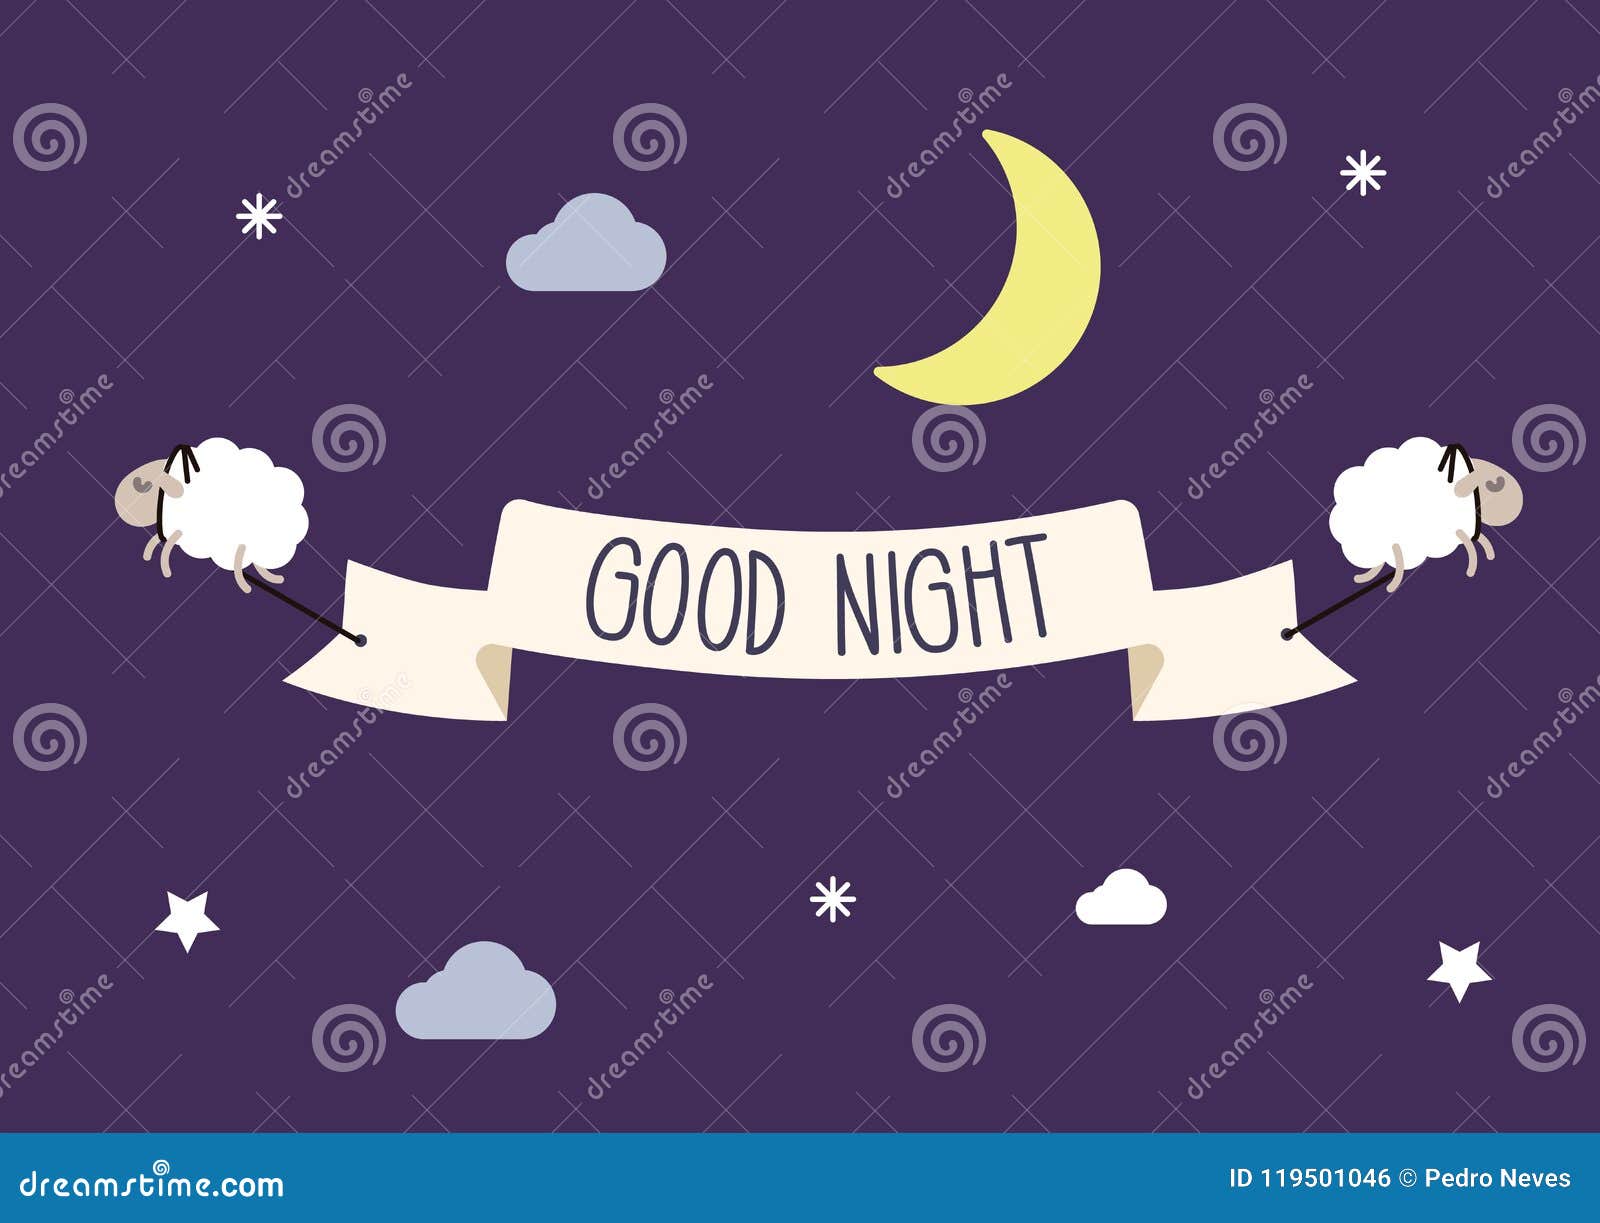 Buenas Noches, Luna en el cielo ilustración vectorial EPS10 Imagen